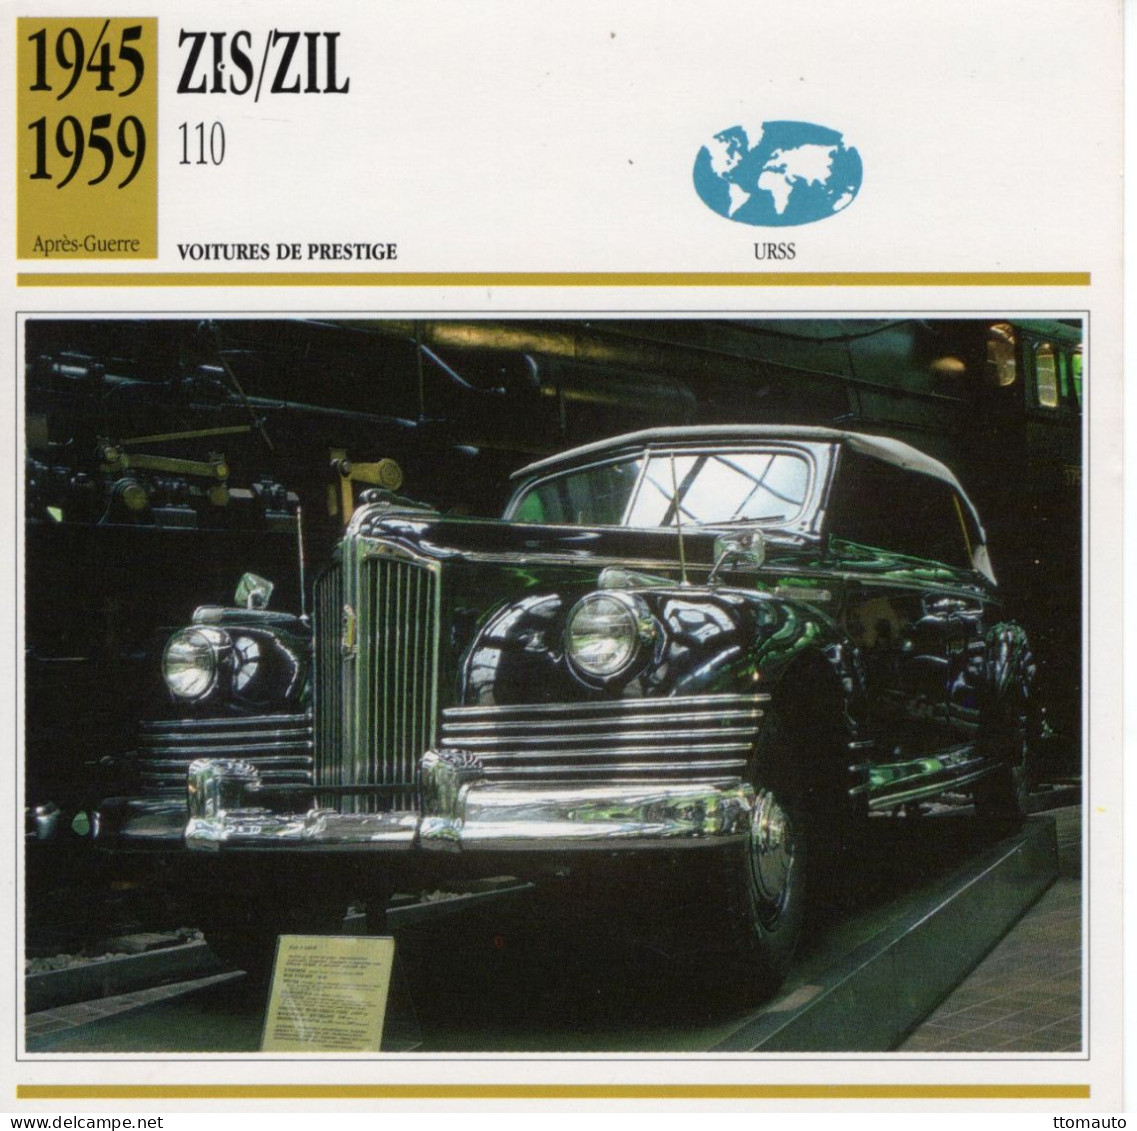 Zis/Zil 110   -  1952  - Voiture De Prestige -  Fiche Technique Automobile (URSS) - Cars